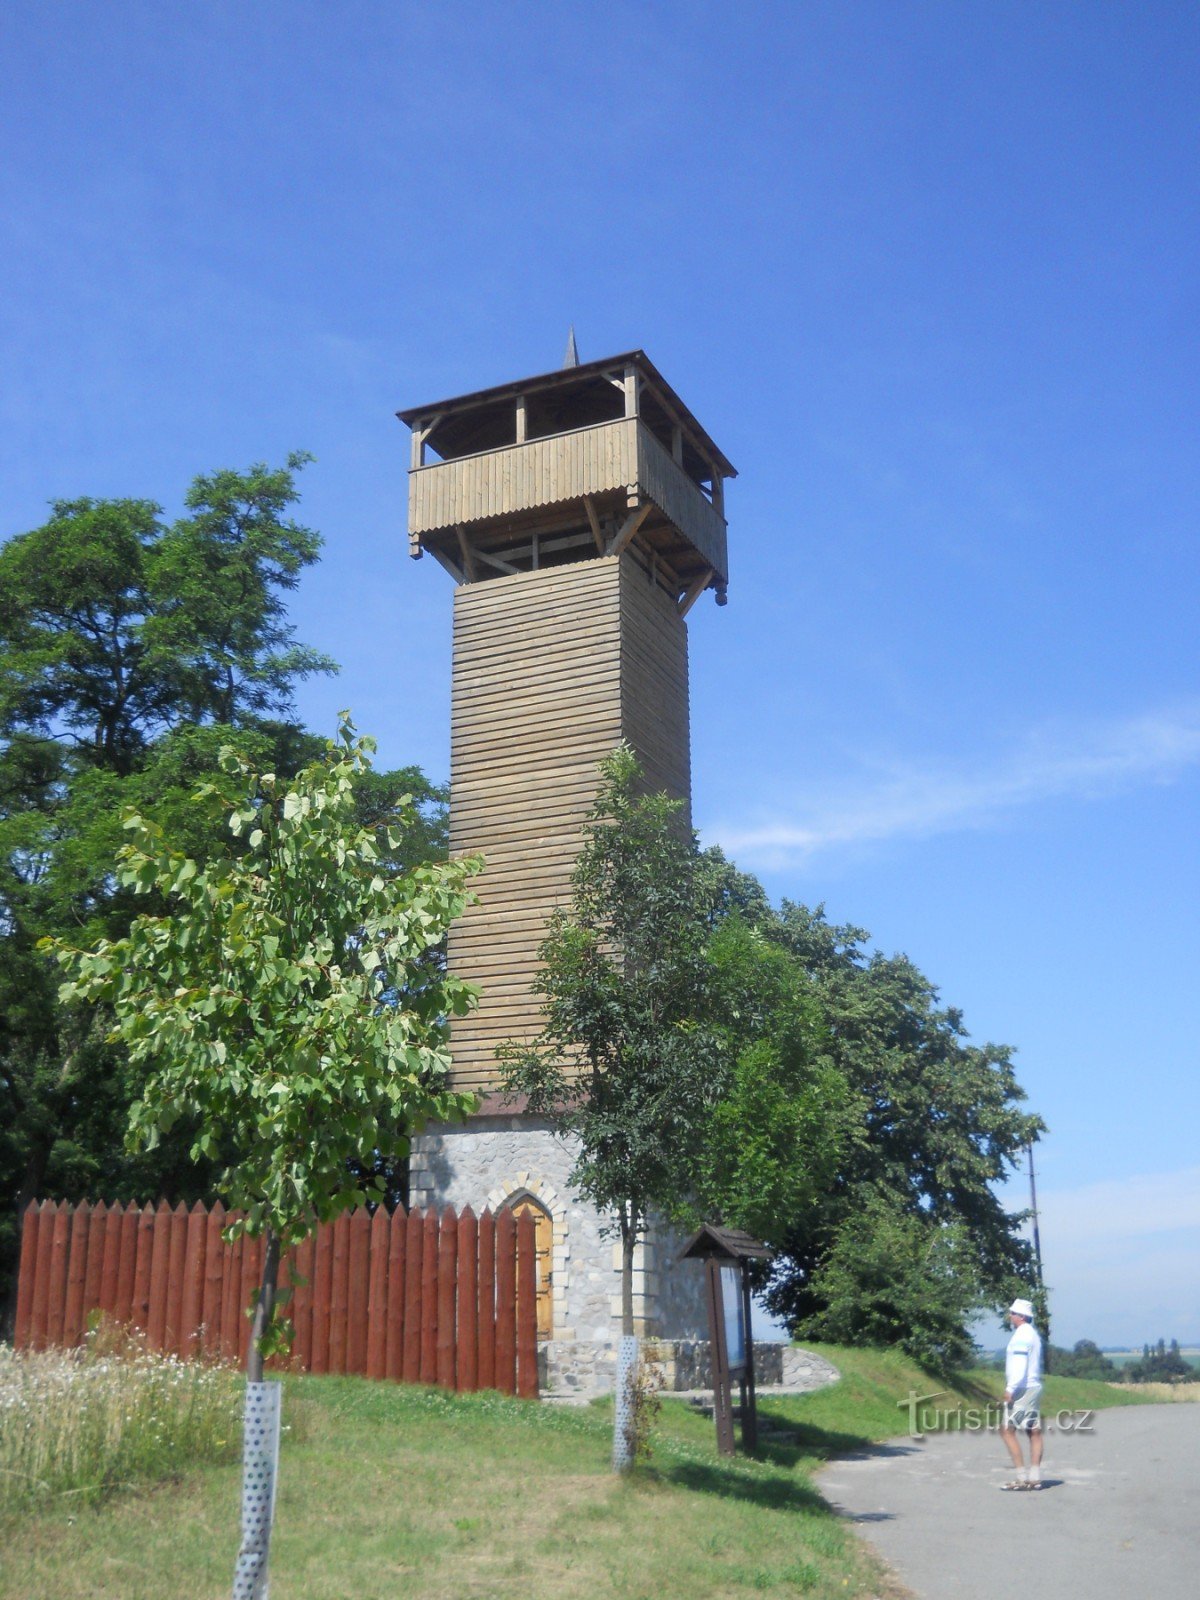 Оглядова вежа Kadlín - Hradišť